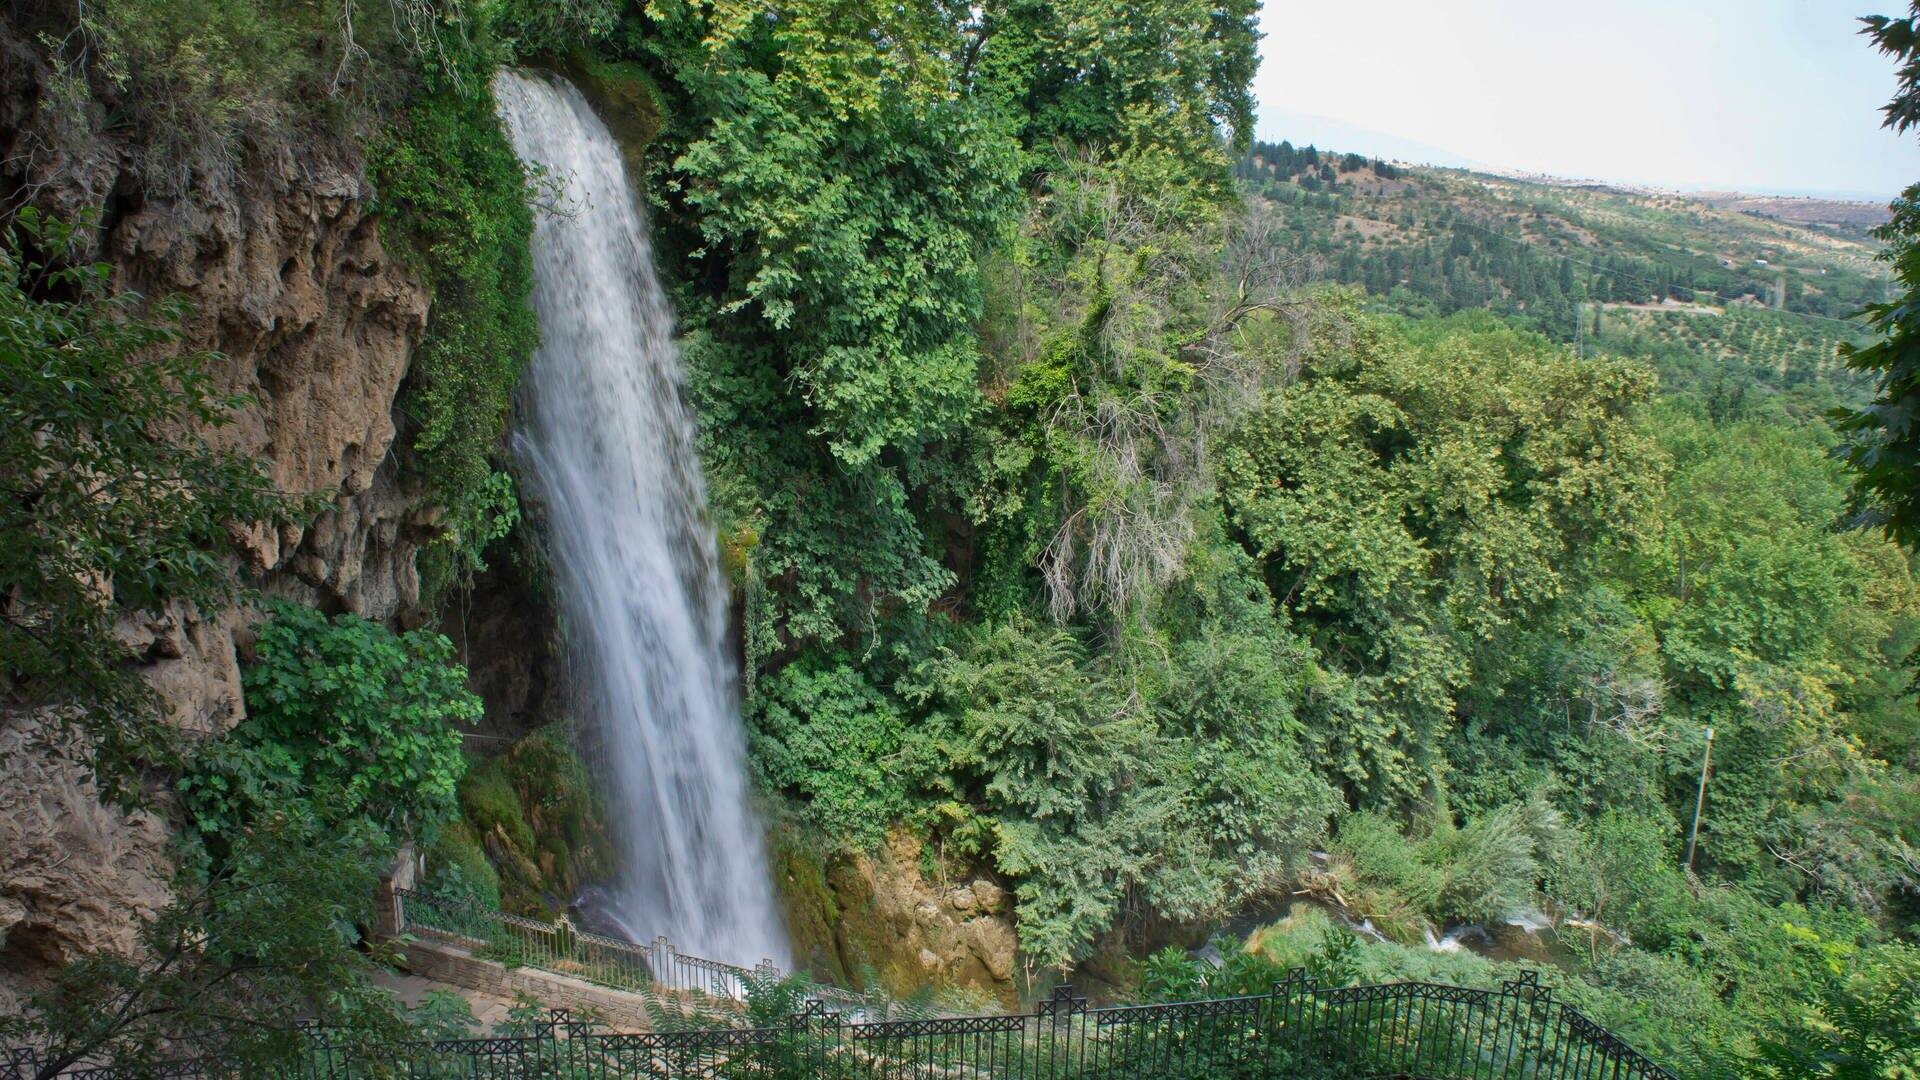 Edessa bietet Städtetrip mit Stadt, Natur und einem prächtigen Wasserfall, der neben der historischen Stadt dahinfließt – alles dabei für Touristen. (Foto: IMAGO / YAY Images)